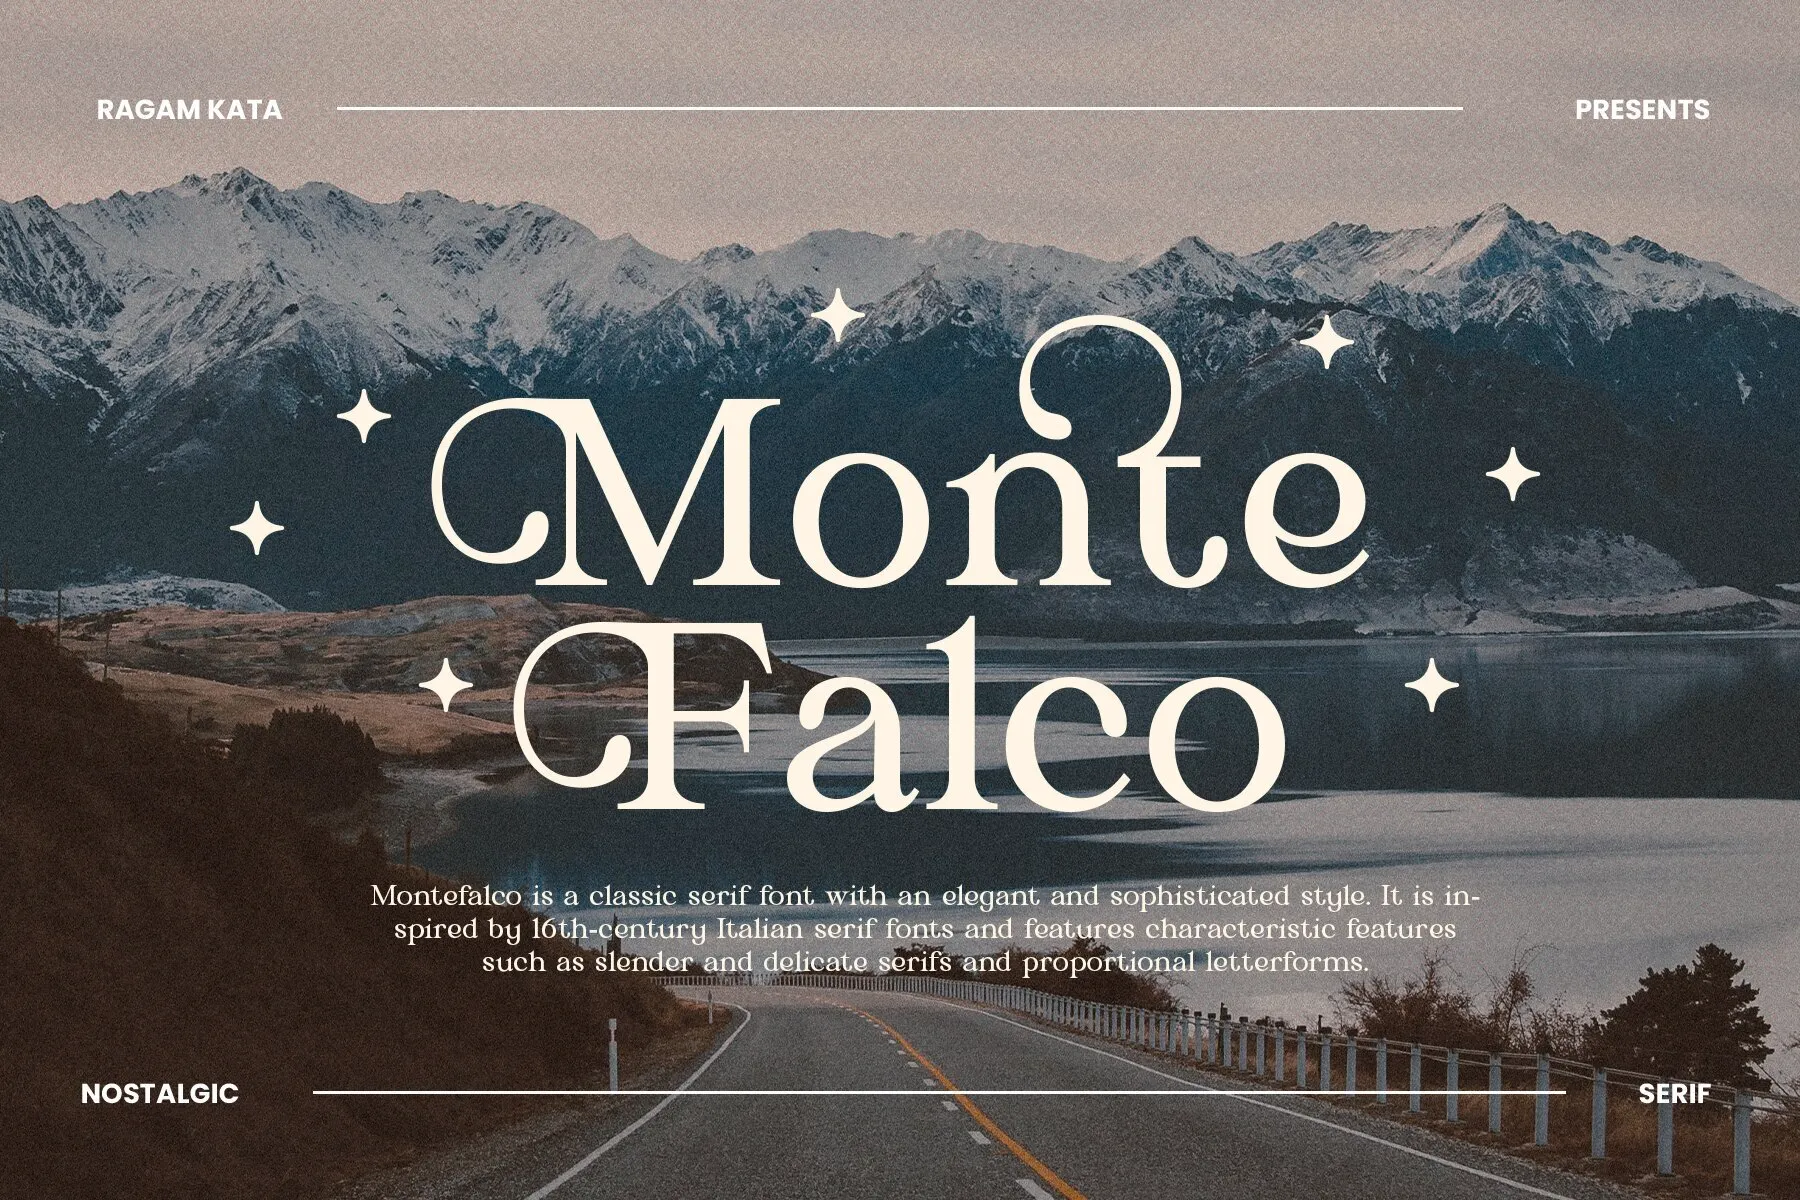 Monte Falco